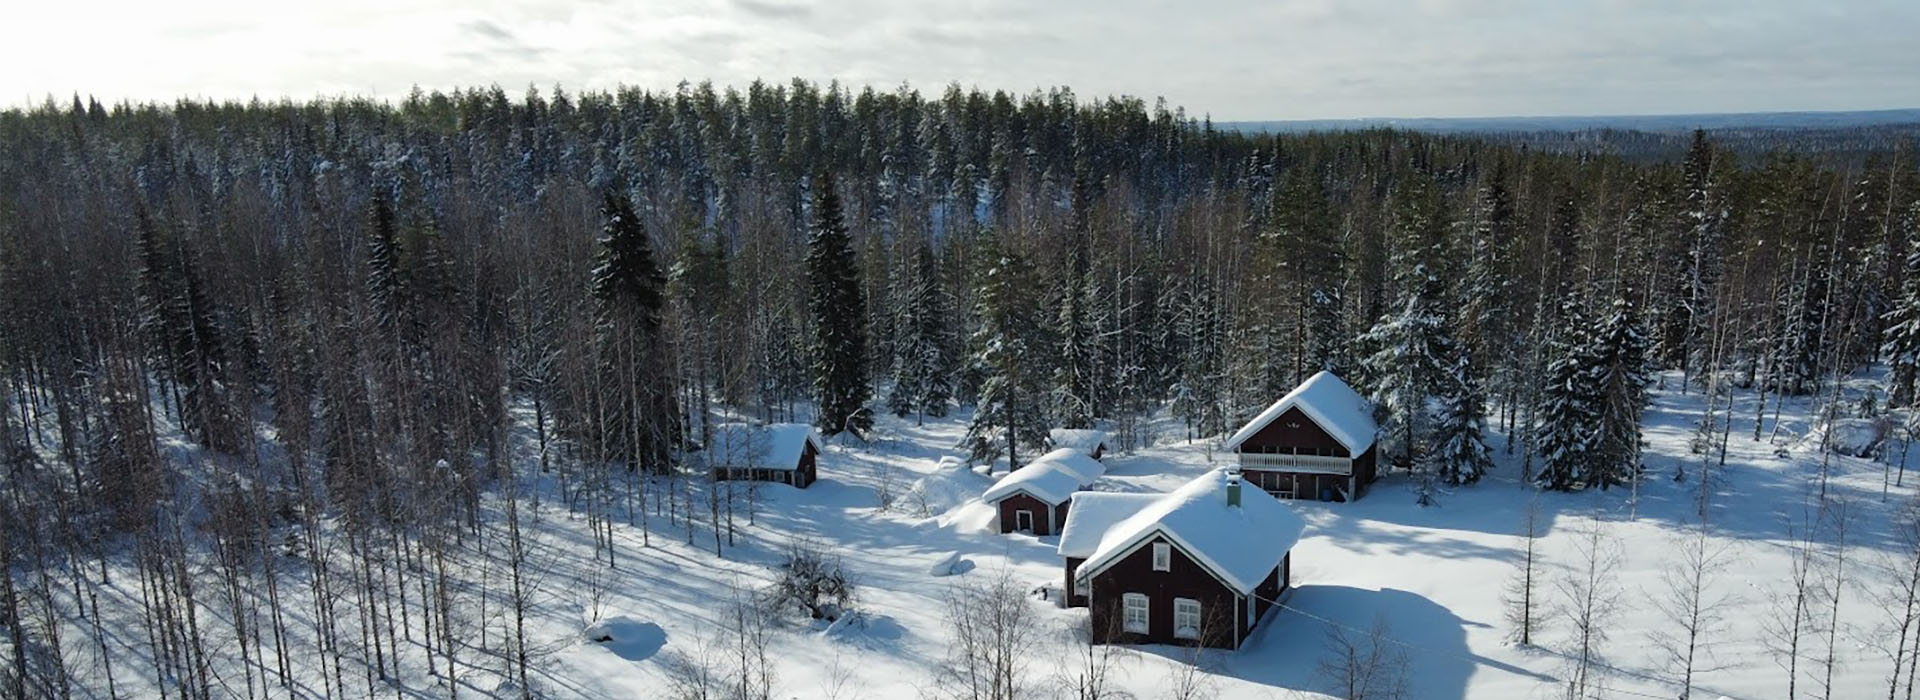 Ilmakuvaukset talvella metsänhoidossa | TekeeHeke - Kuopio, Pieksämäki